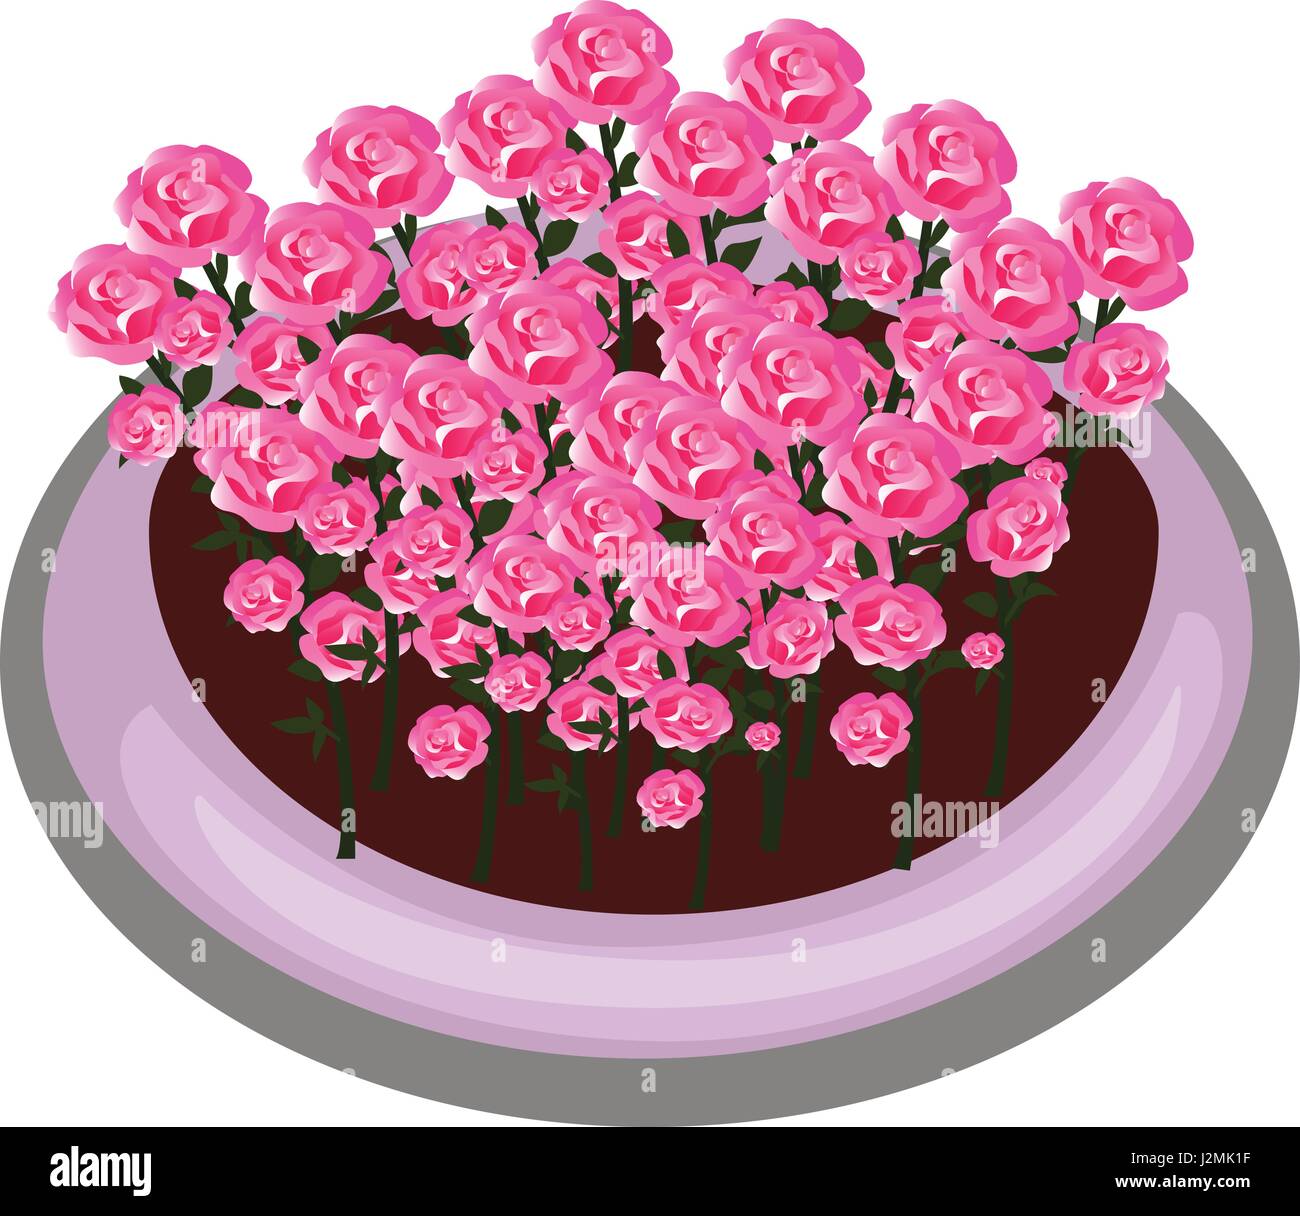 Isometrische Cartoon Bush Blumenbeet mit roten Rosen - Elemente für Plattenset Karte, Landschaftsgestaltung Stock Vektor